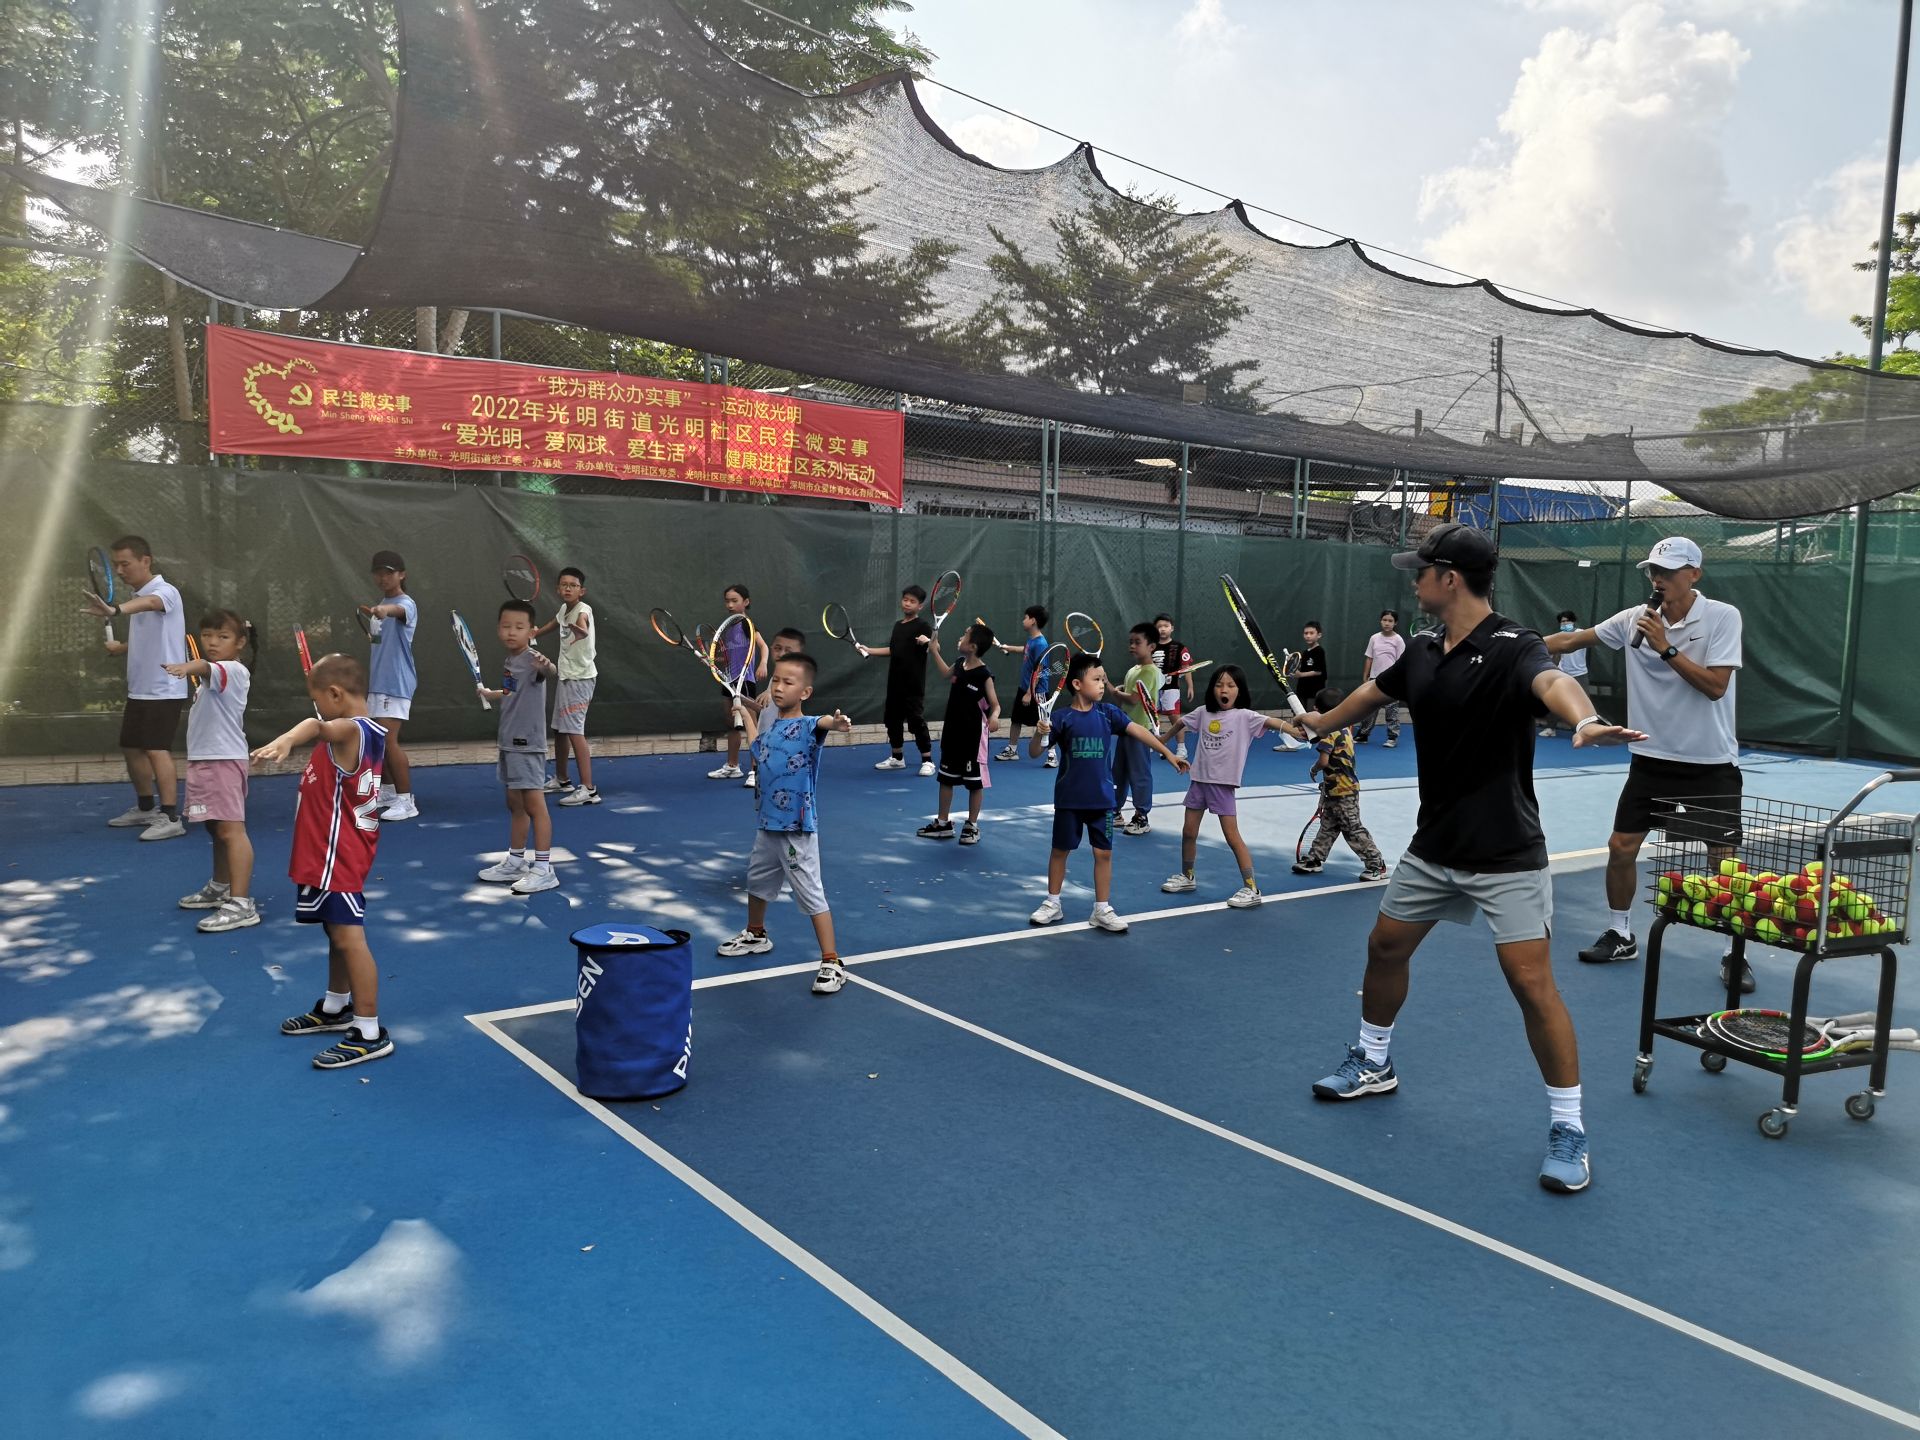 光明社区为青少年开设免费网球培训班  